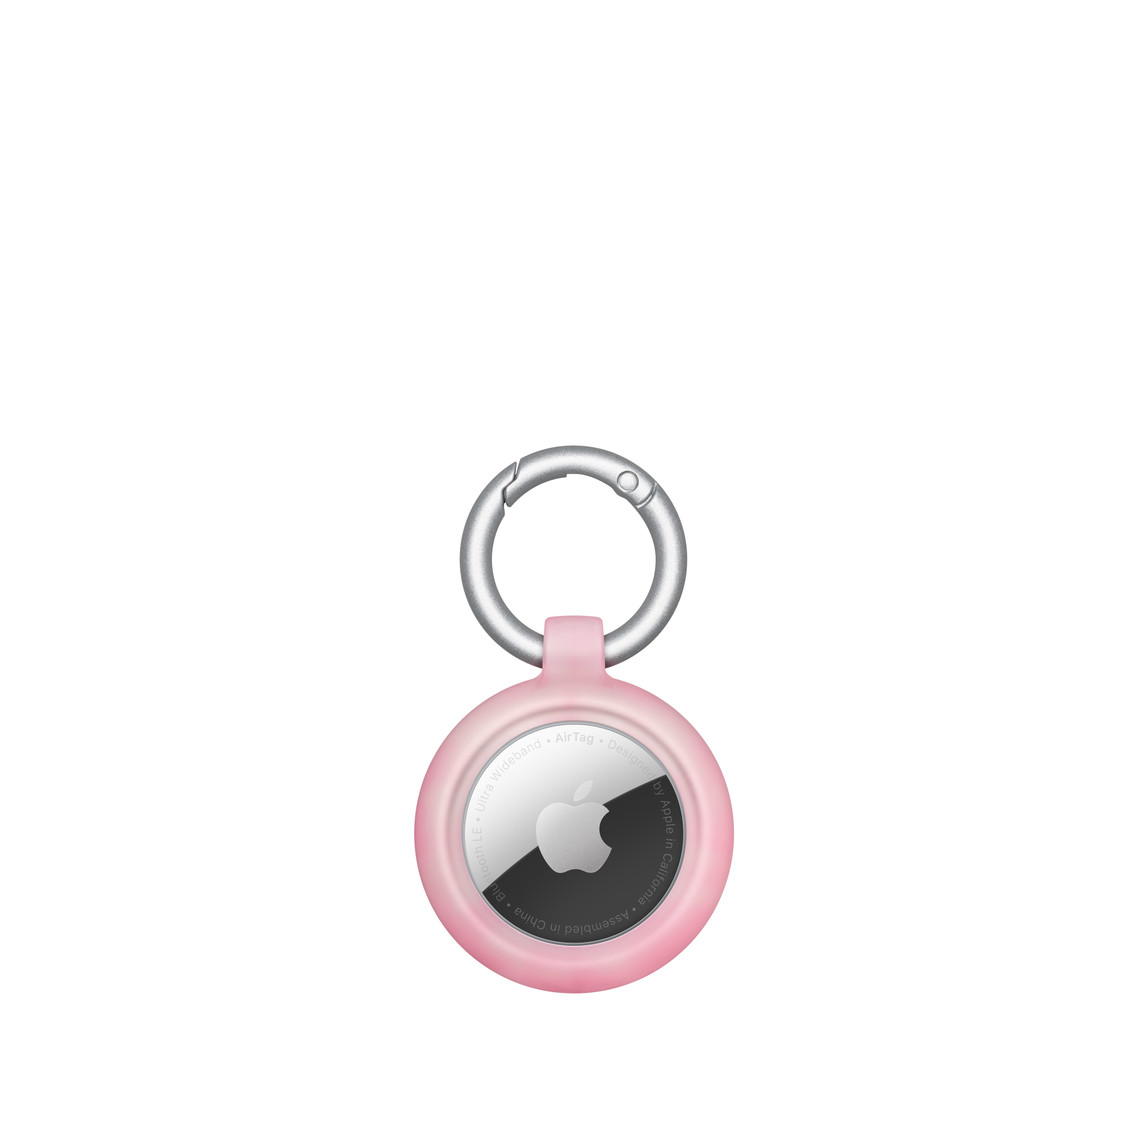 Coque Figura Series d’Otterbox, AirTag en place, logo Apple, suspendue à un mousqueton rond.